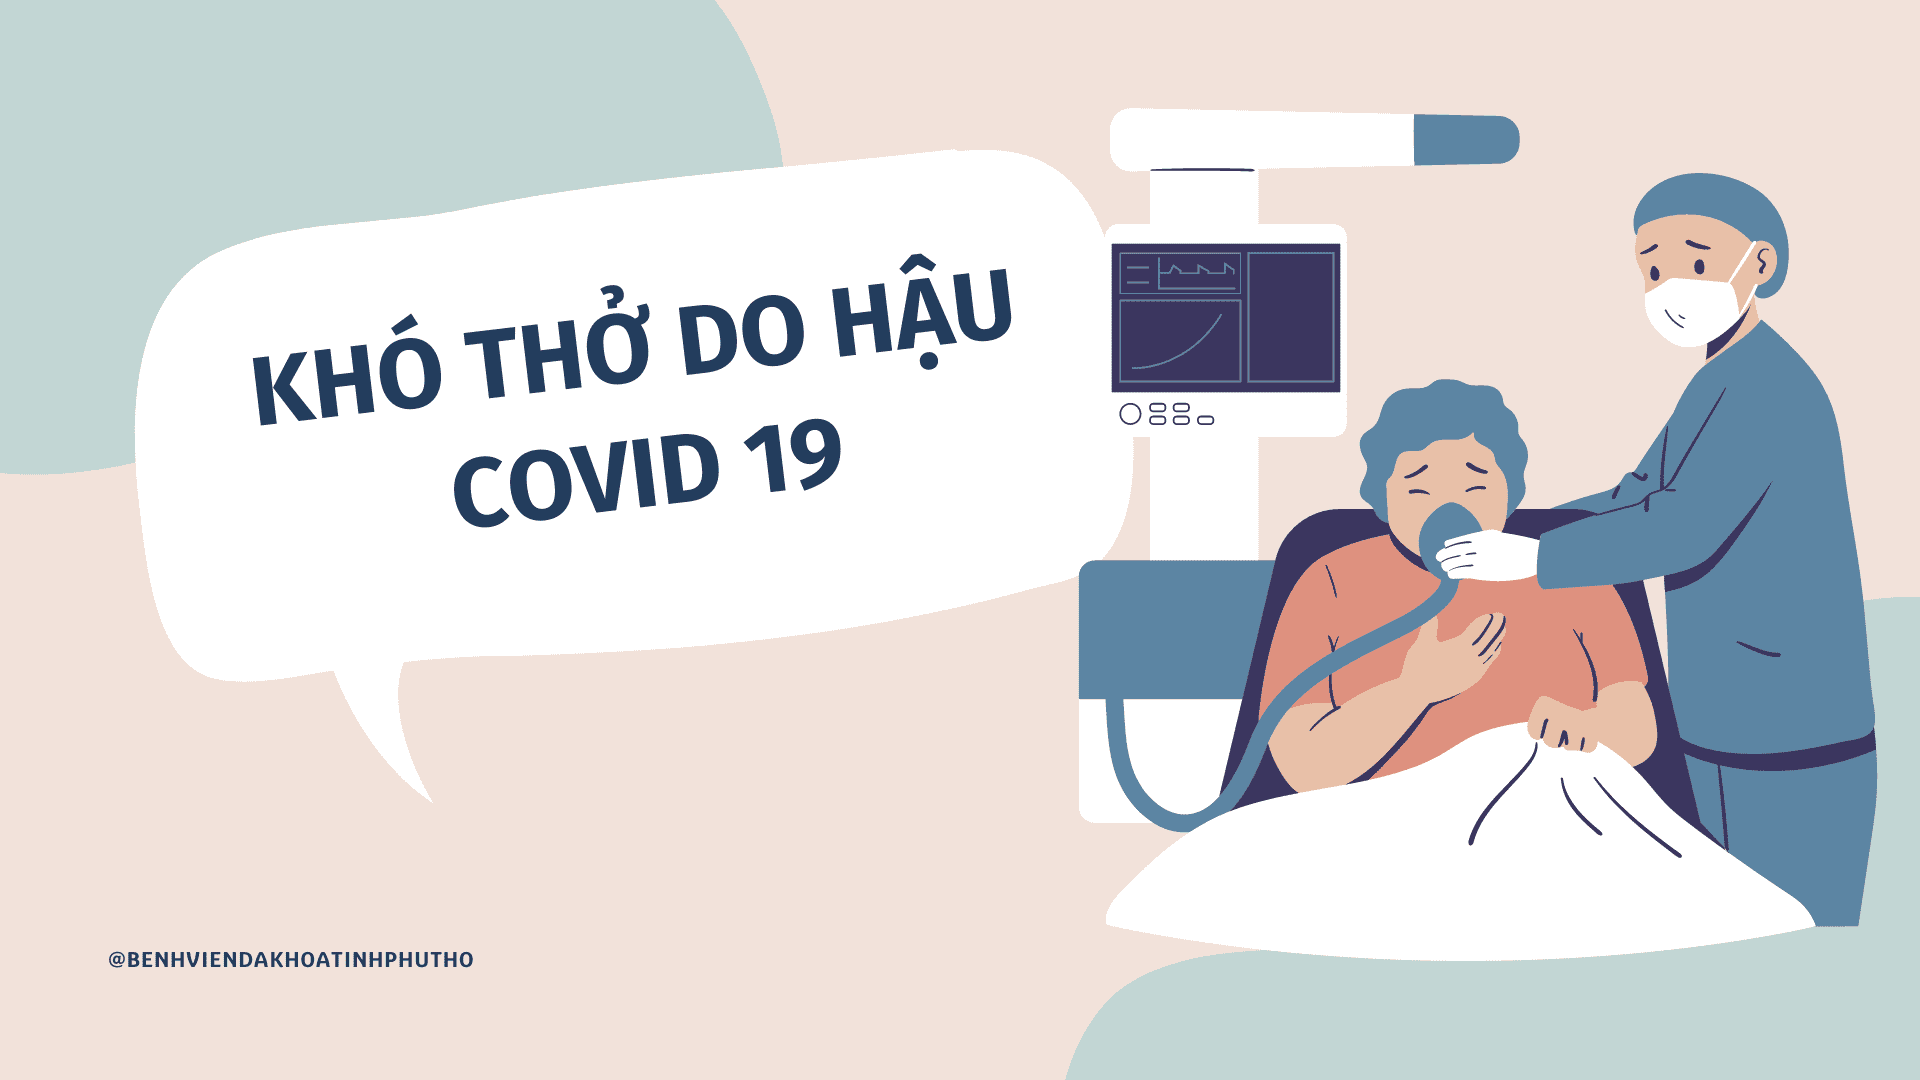 Khó thở là biểu hiện thường gặp của hội chứng hậu covid-19